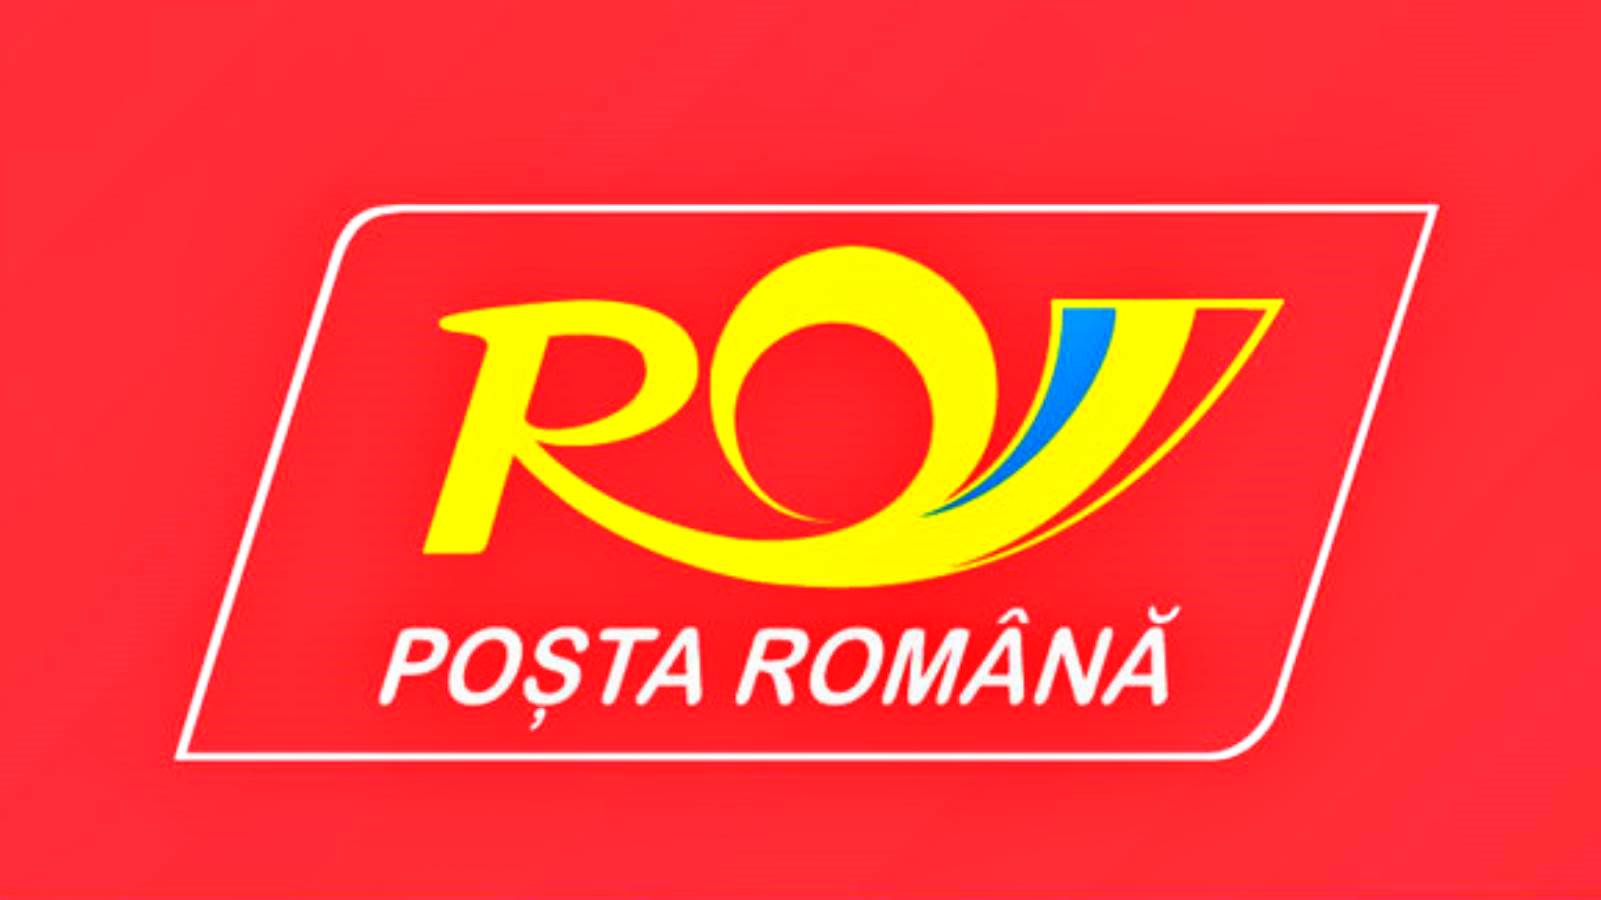 Roemeense postverpakking aangeboden voor pakketzendingen